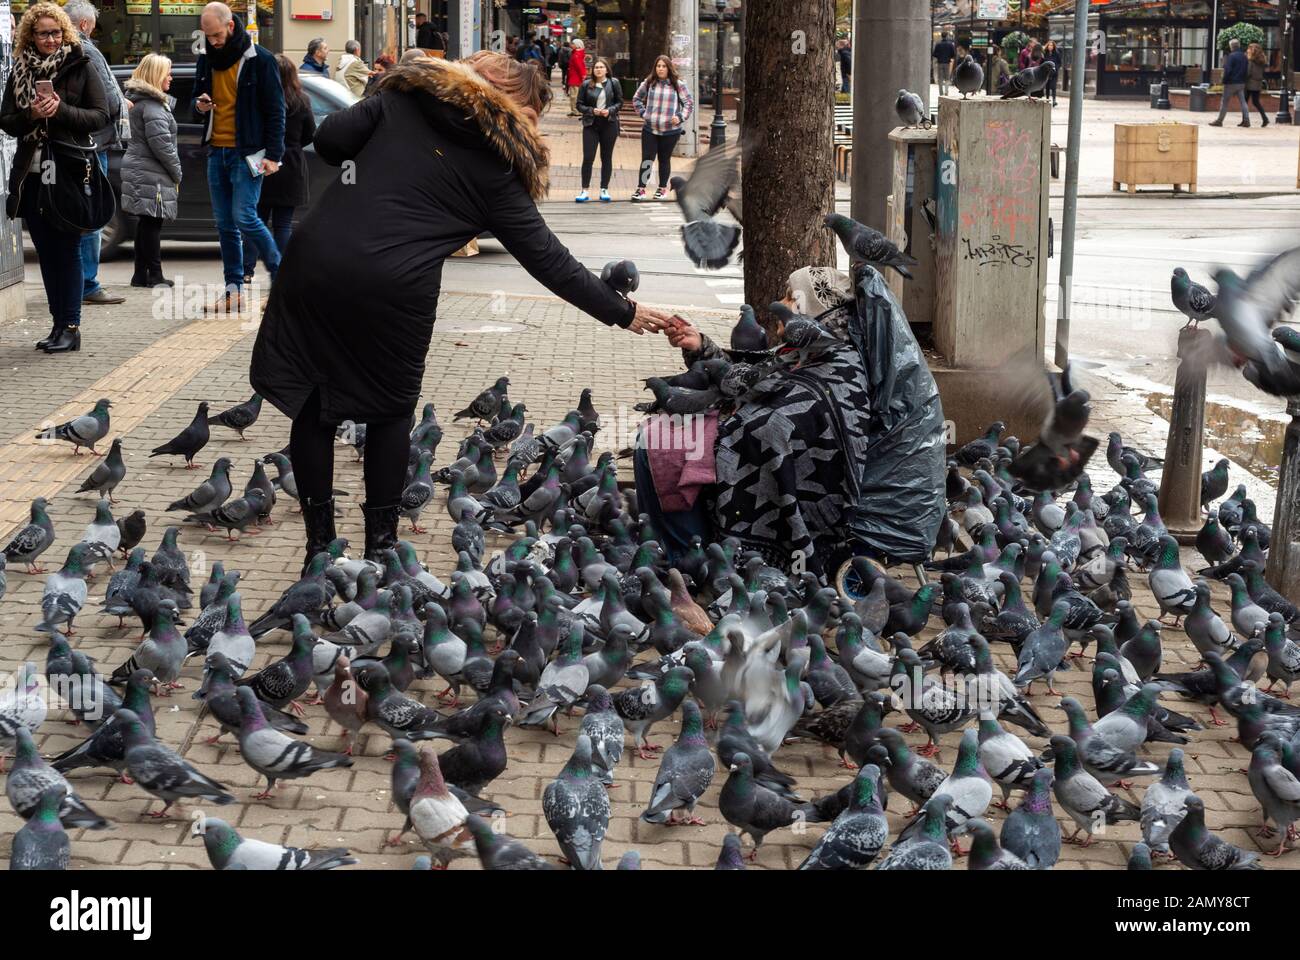 Tourist, der einer alten Seniorin, die auf dem Bürgersteig sitzt und von Tauben umgeben ist, Geld spendet, als lokale Attraktion in den Straßen von Sofia, Bulgarien, Europa, EU Stockfoto